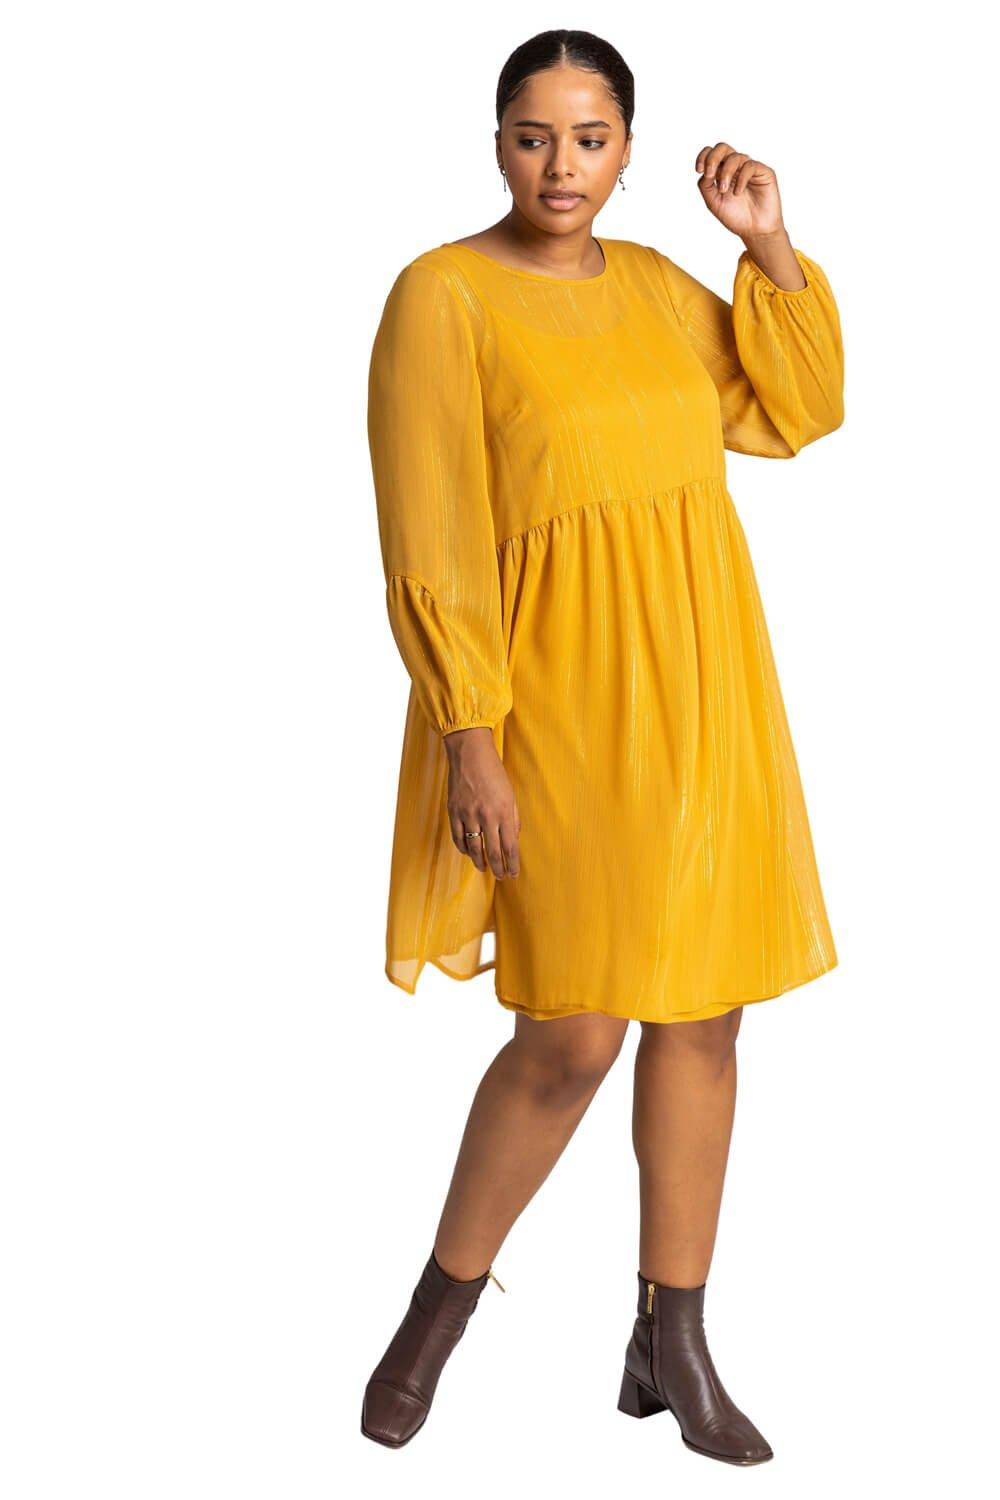 дополнительные секции exost curve tube extension kit 20236 Свободное платье Curve из шифона с мерцающими полосками Roman, желтый